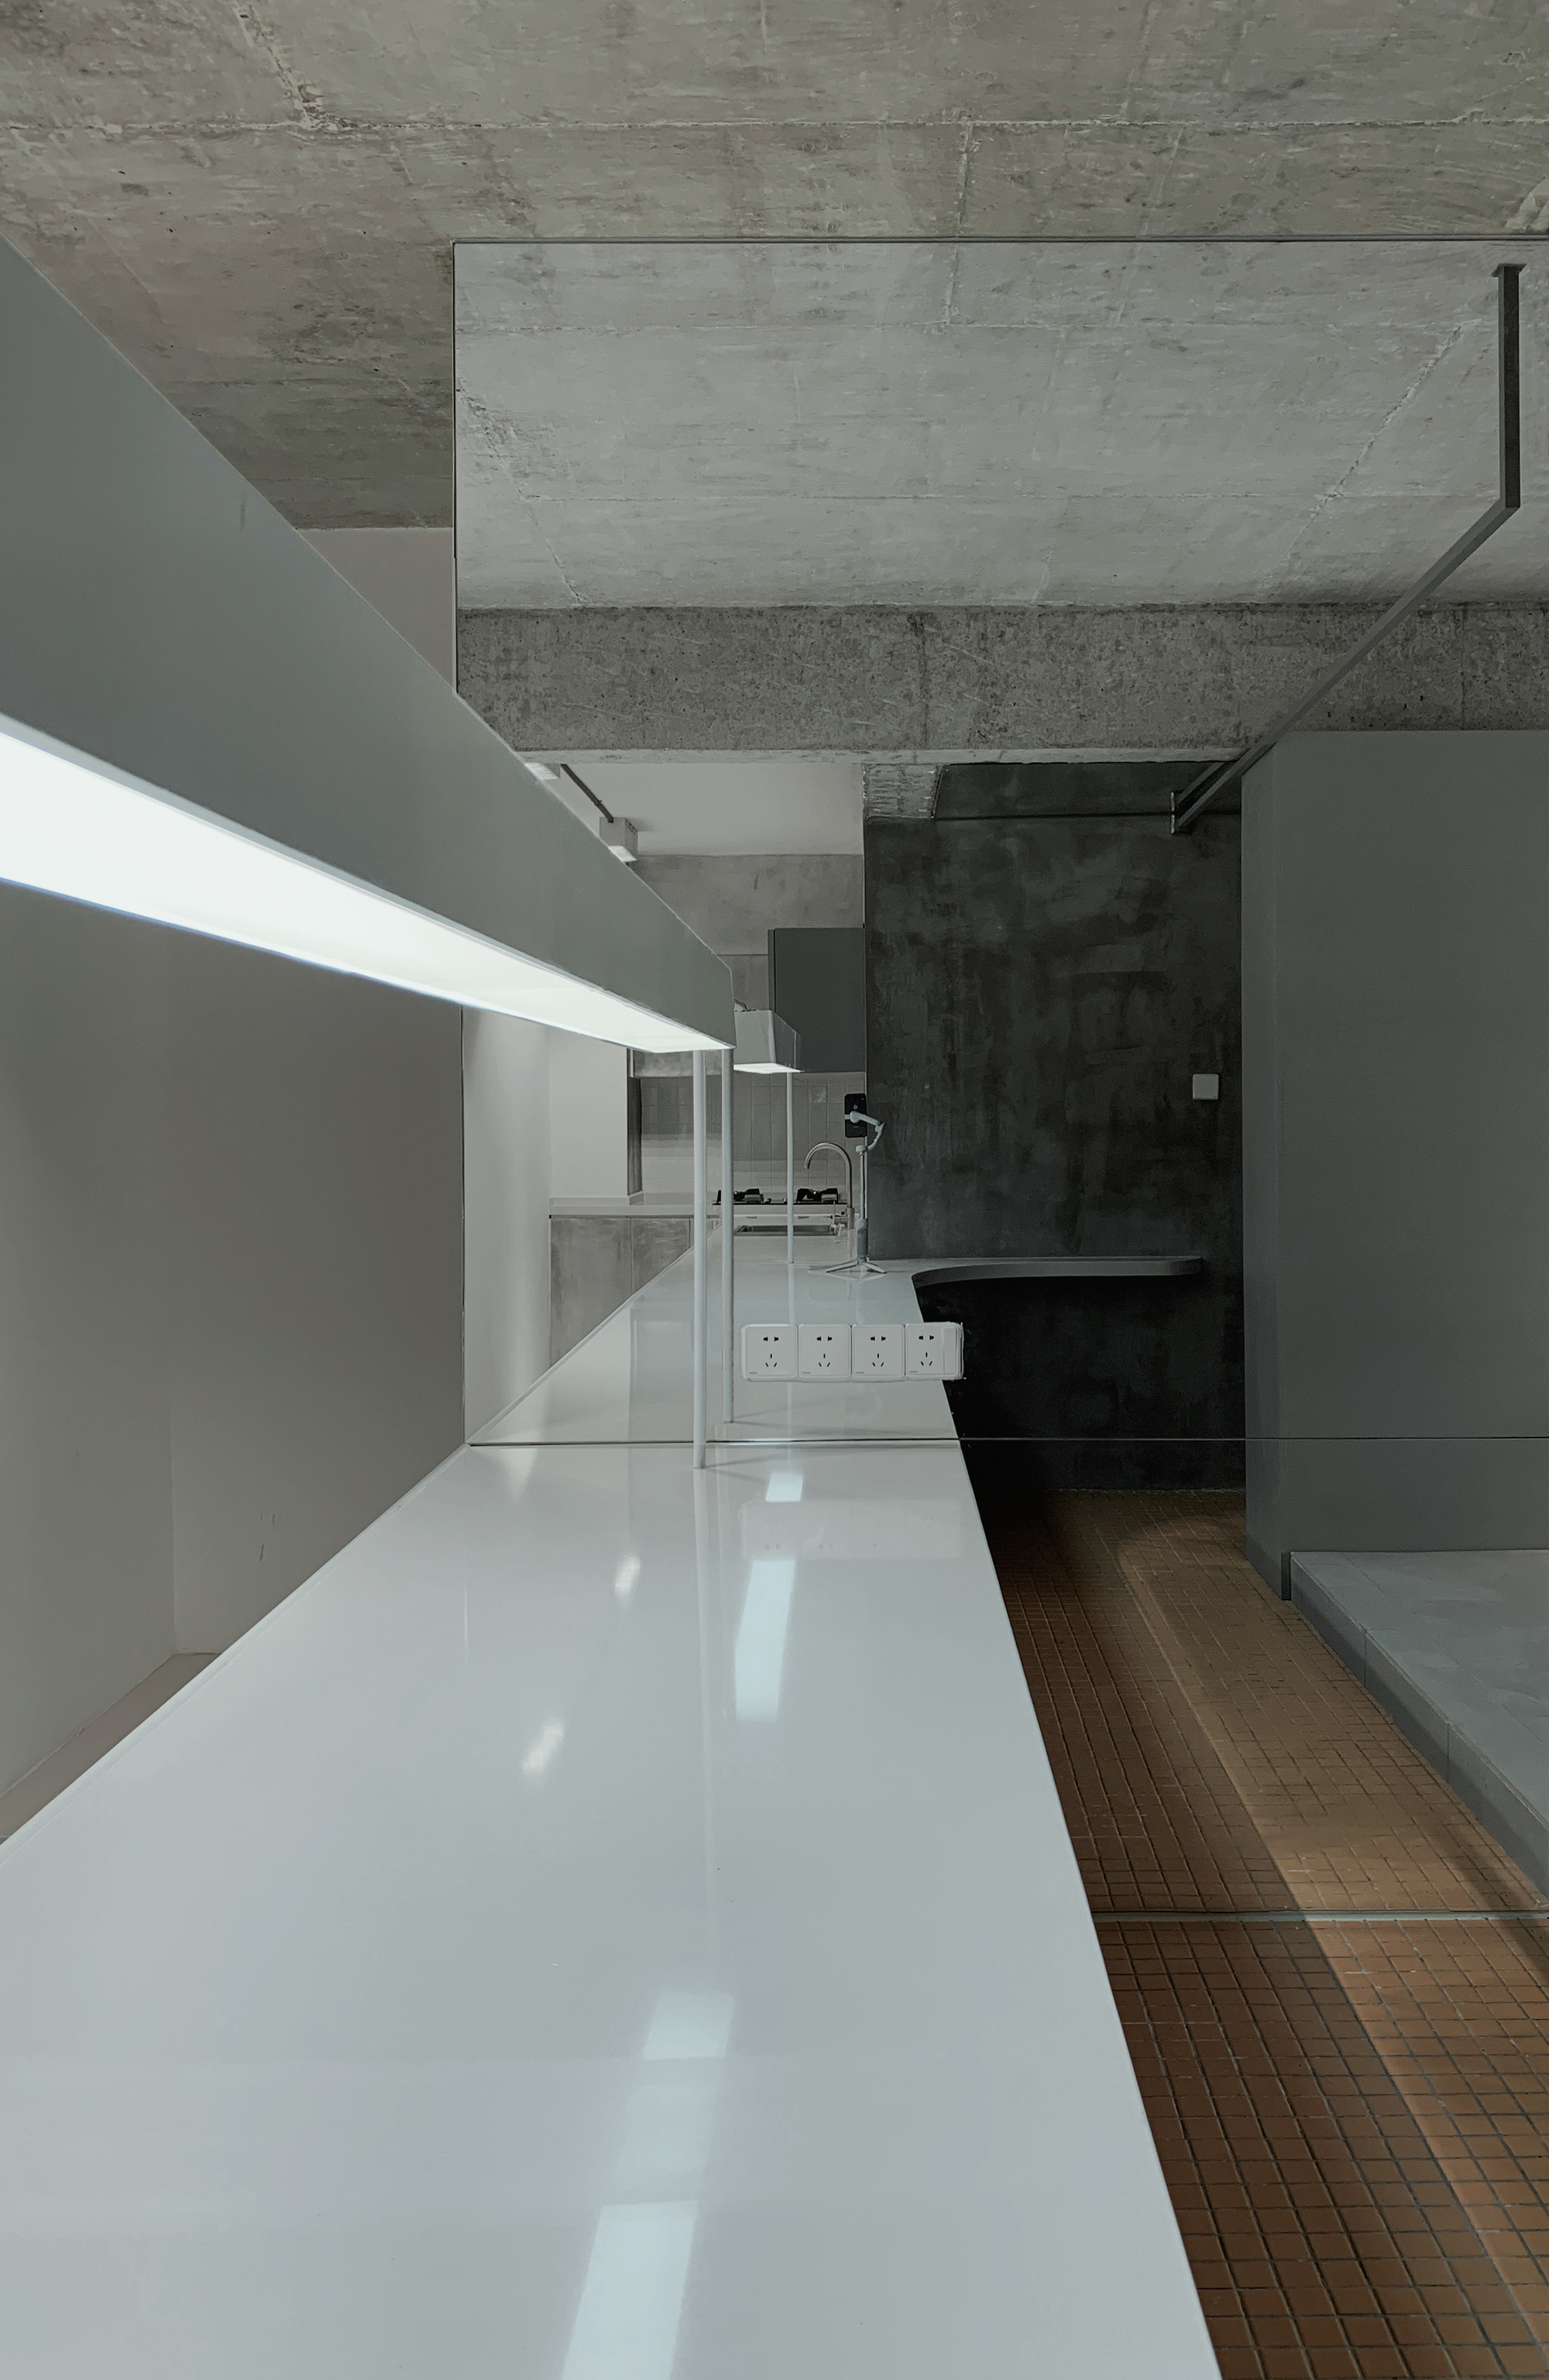 图片[3]|居屋2002号公寓 / 阿穆隆设计工作室|ART-Arrakis | 建筑室内设计的创新与灵感